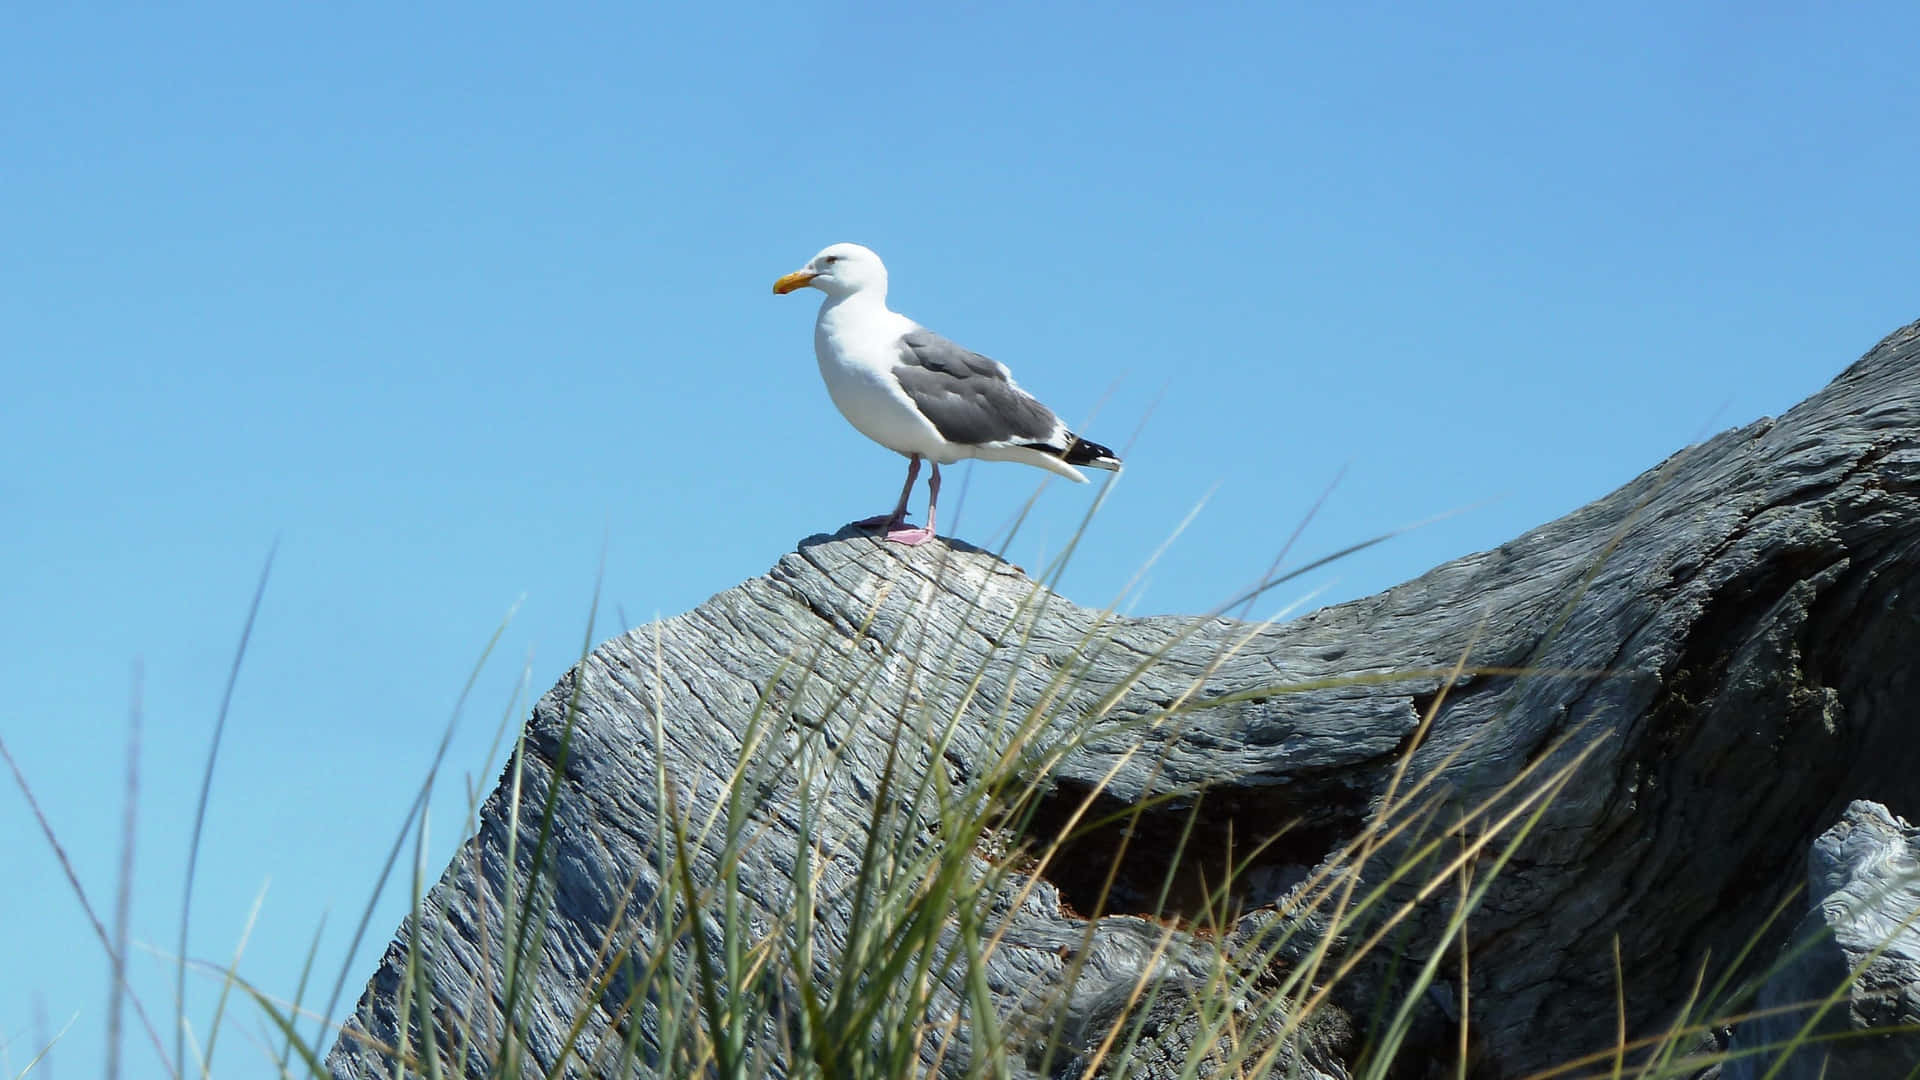 Seagull Perchedon Rocky Outcrop Wallpaper